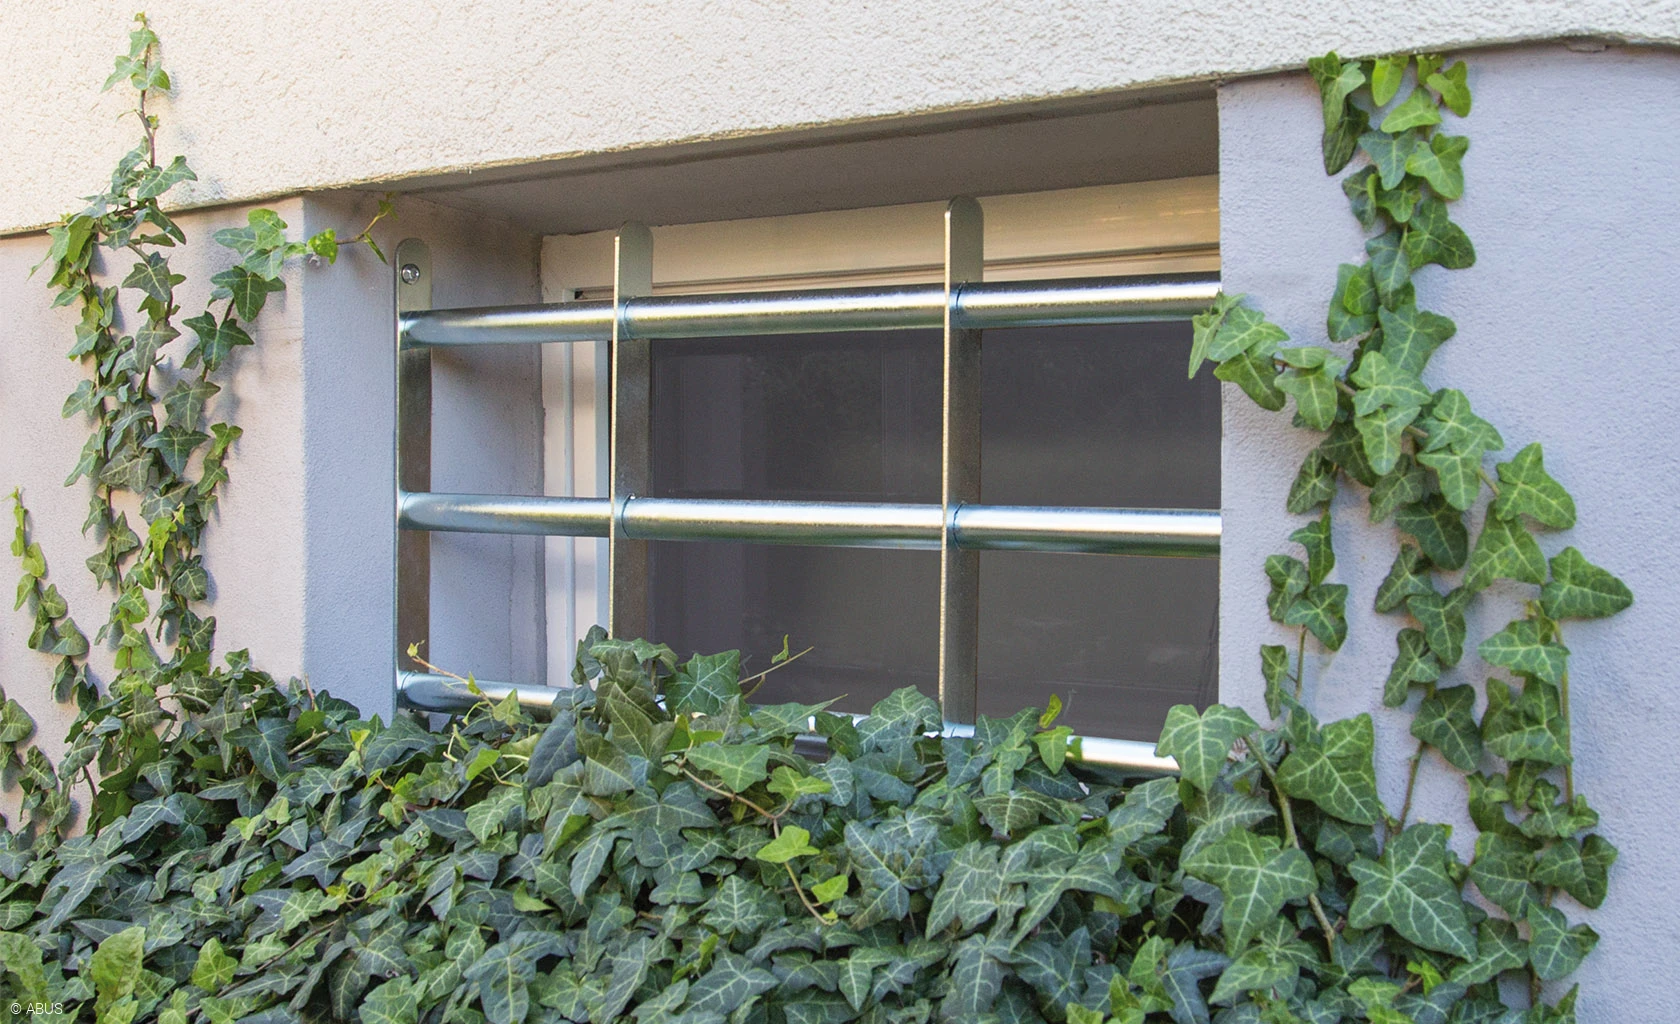 Sécuriser les fenêtres contre les effractions - infomaison